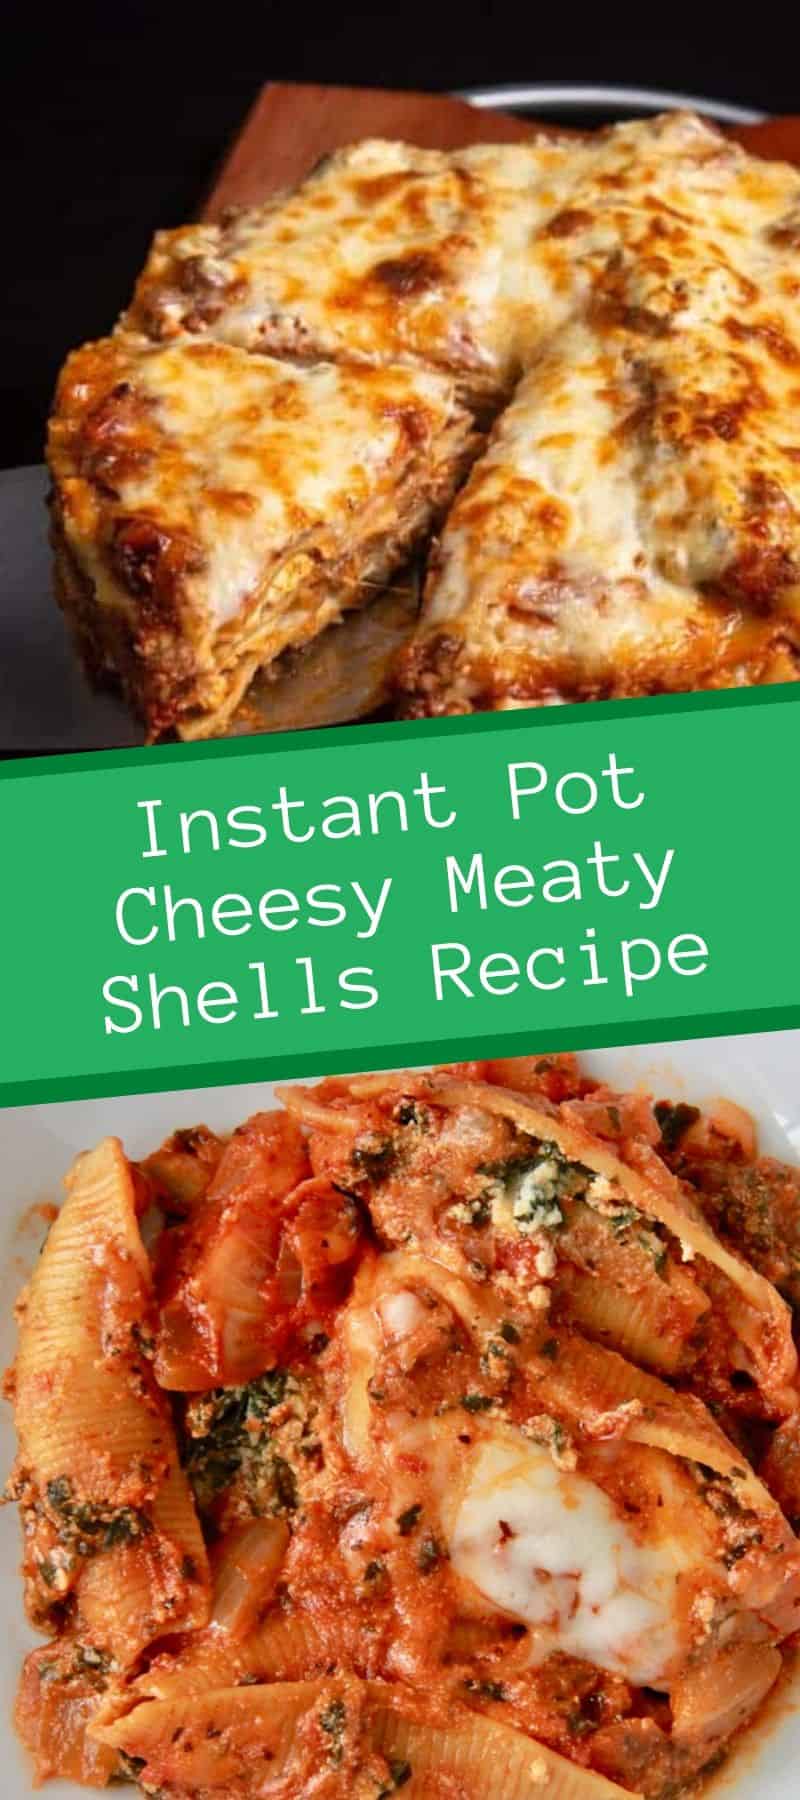 Instant Pot Cheesy Meaty Shells Recipe